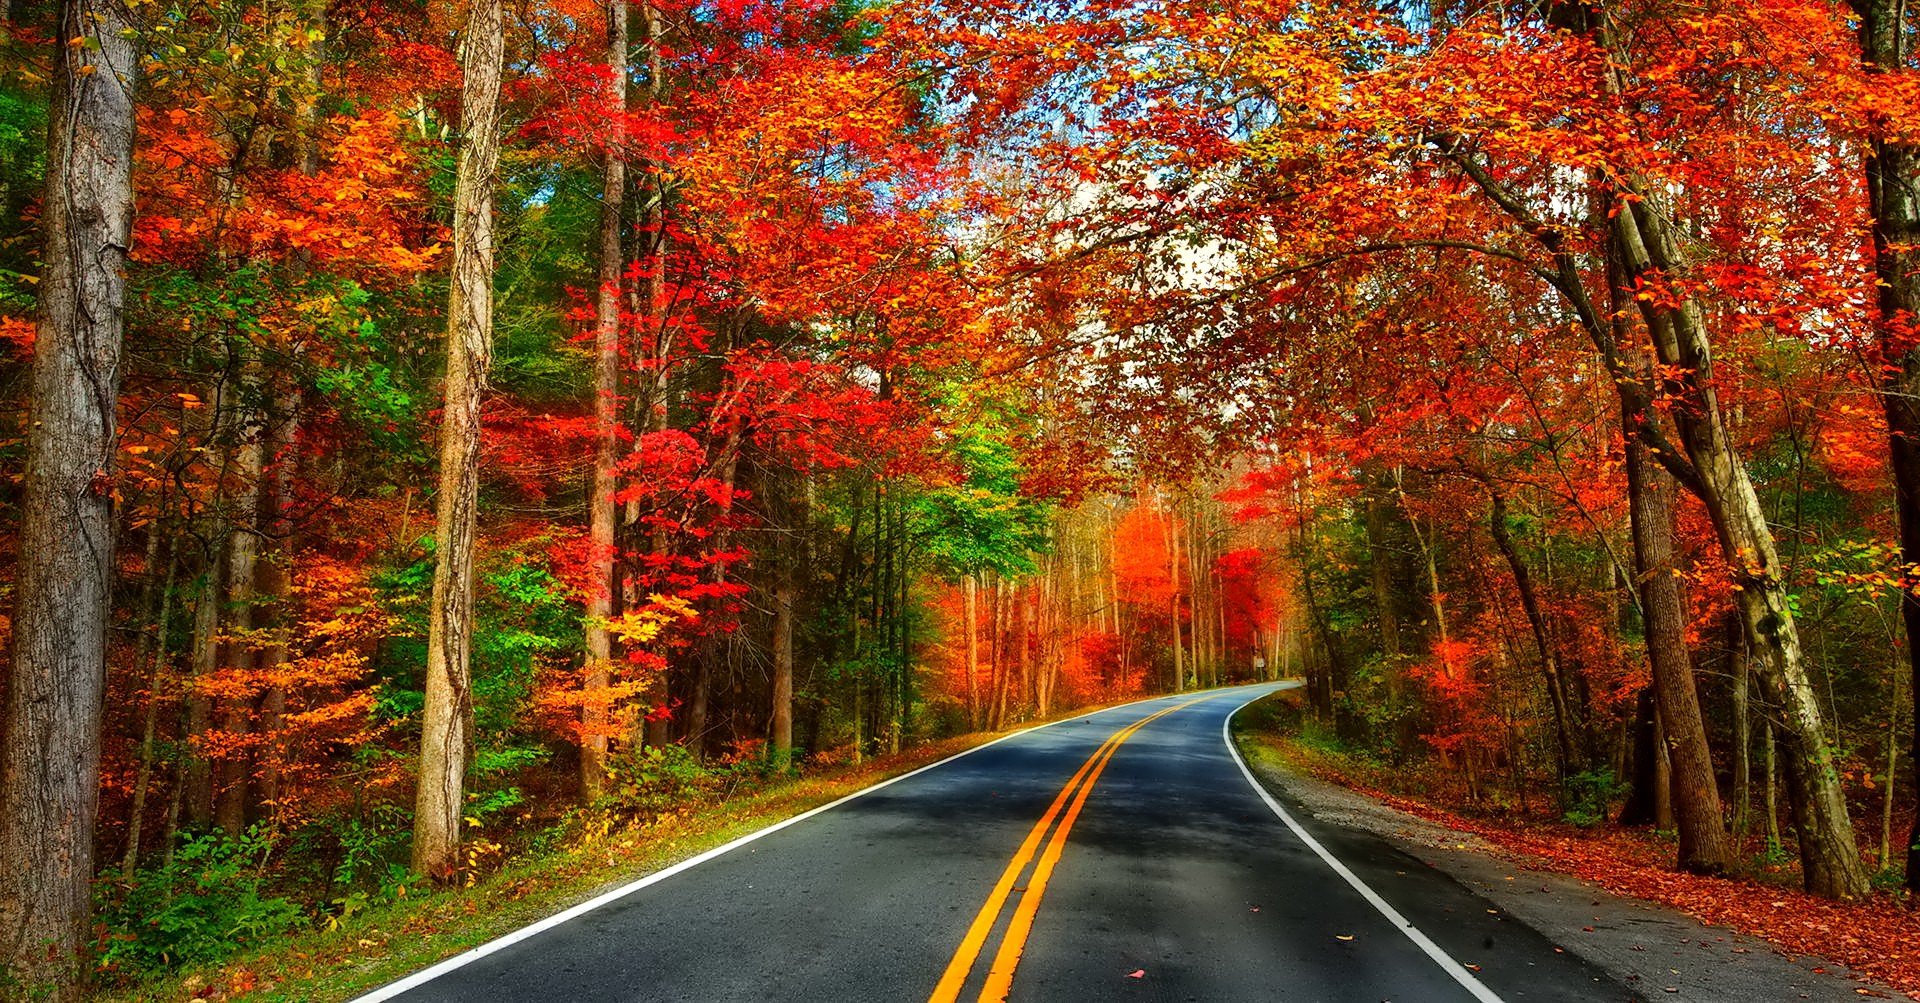 Con đường đi qua khu rừng lá đỏ rất đẹp